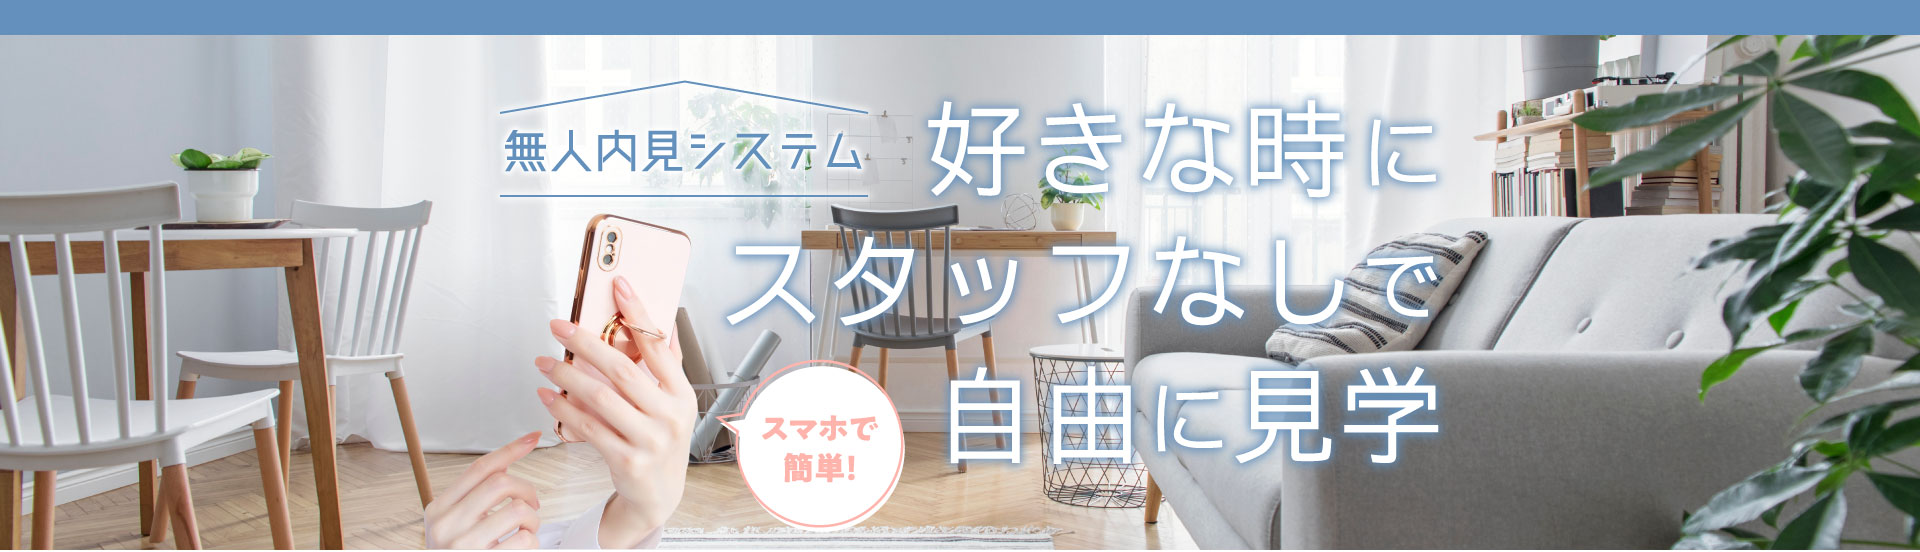 松江市で無人内見システムを導入している林谷ホームのページ画像